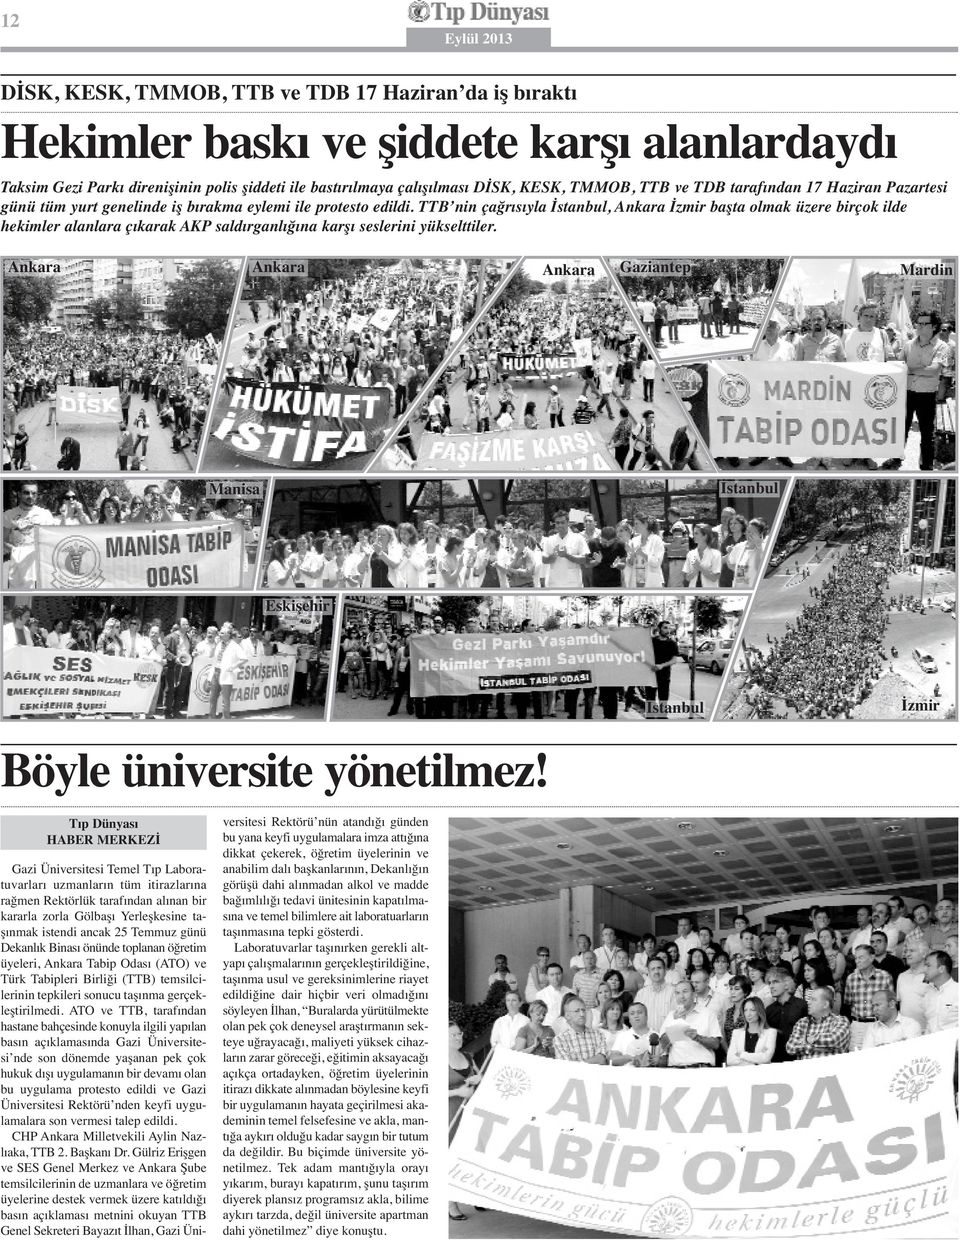 TTB nin çağrısıyla İstanbul, Ankara İzmir başta olmak üzere birçok ilde hekimler alanlara çıkarak AKP saldırganlığına karşı seslerini yükselttiler.